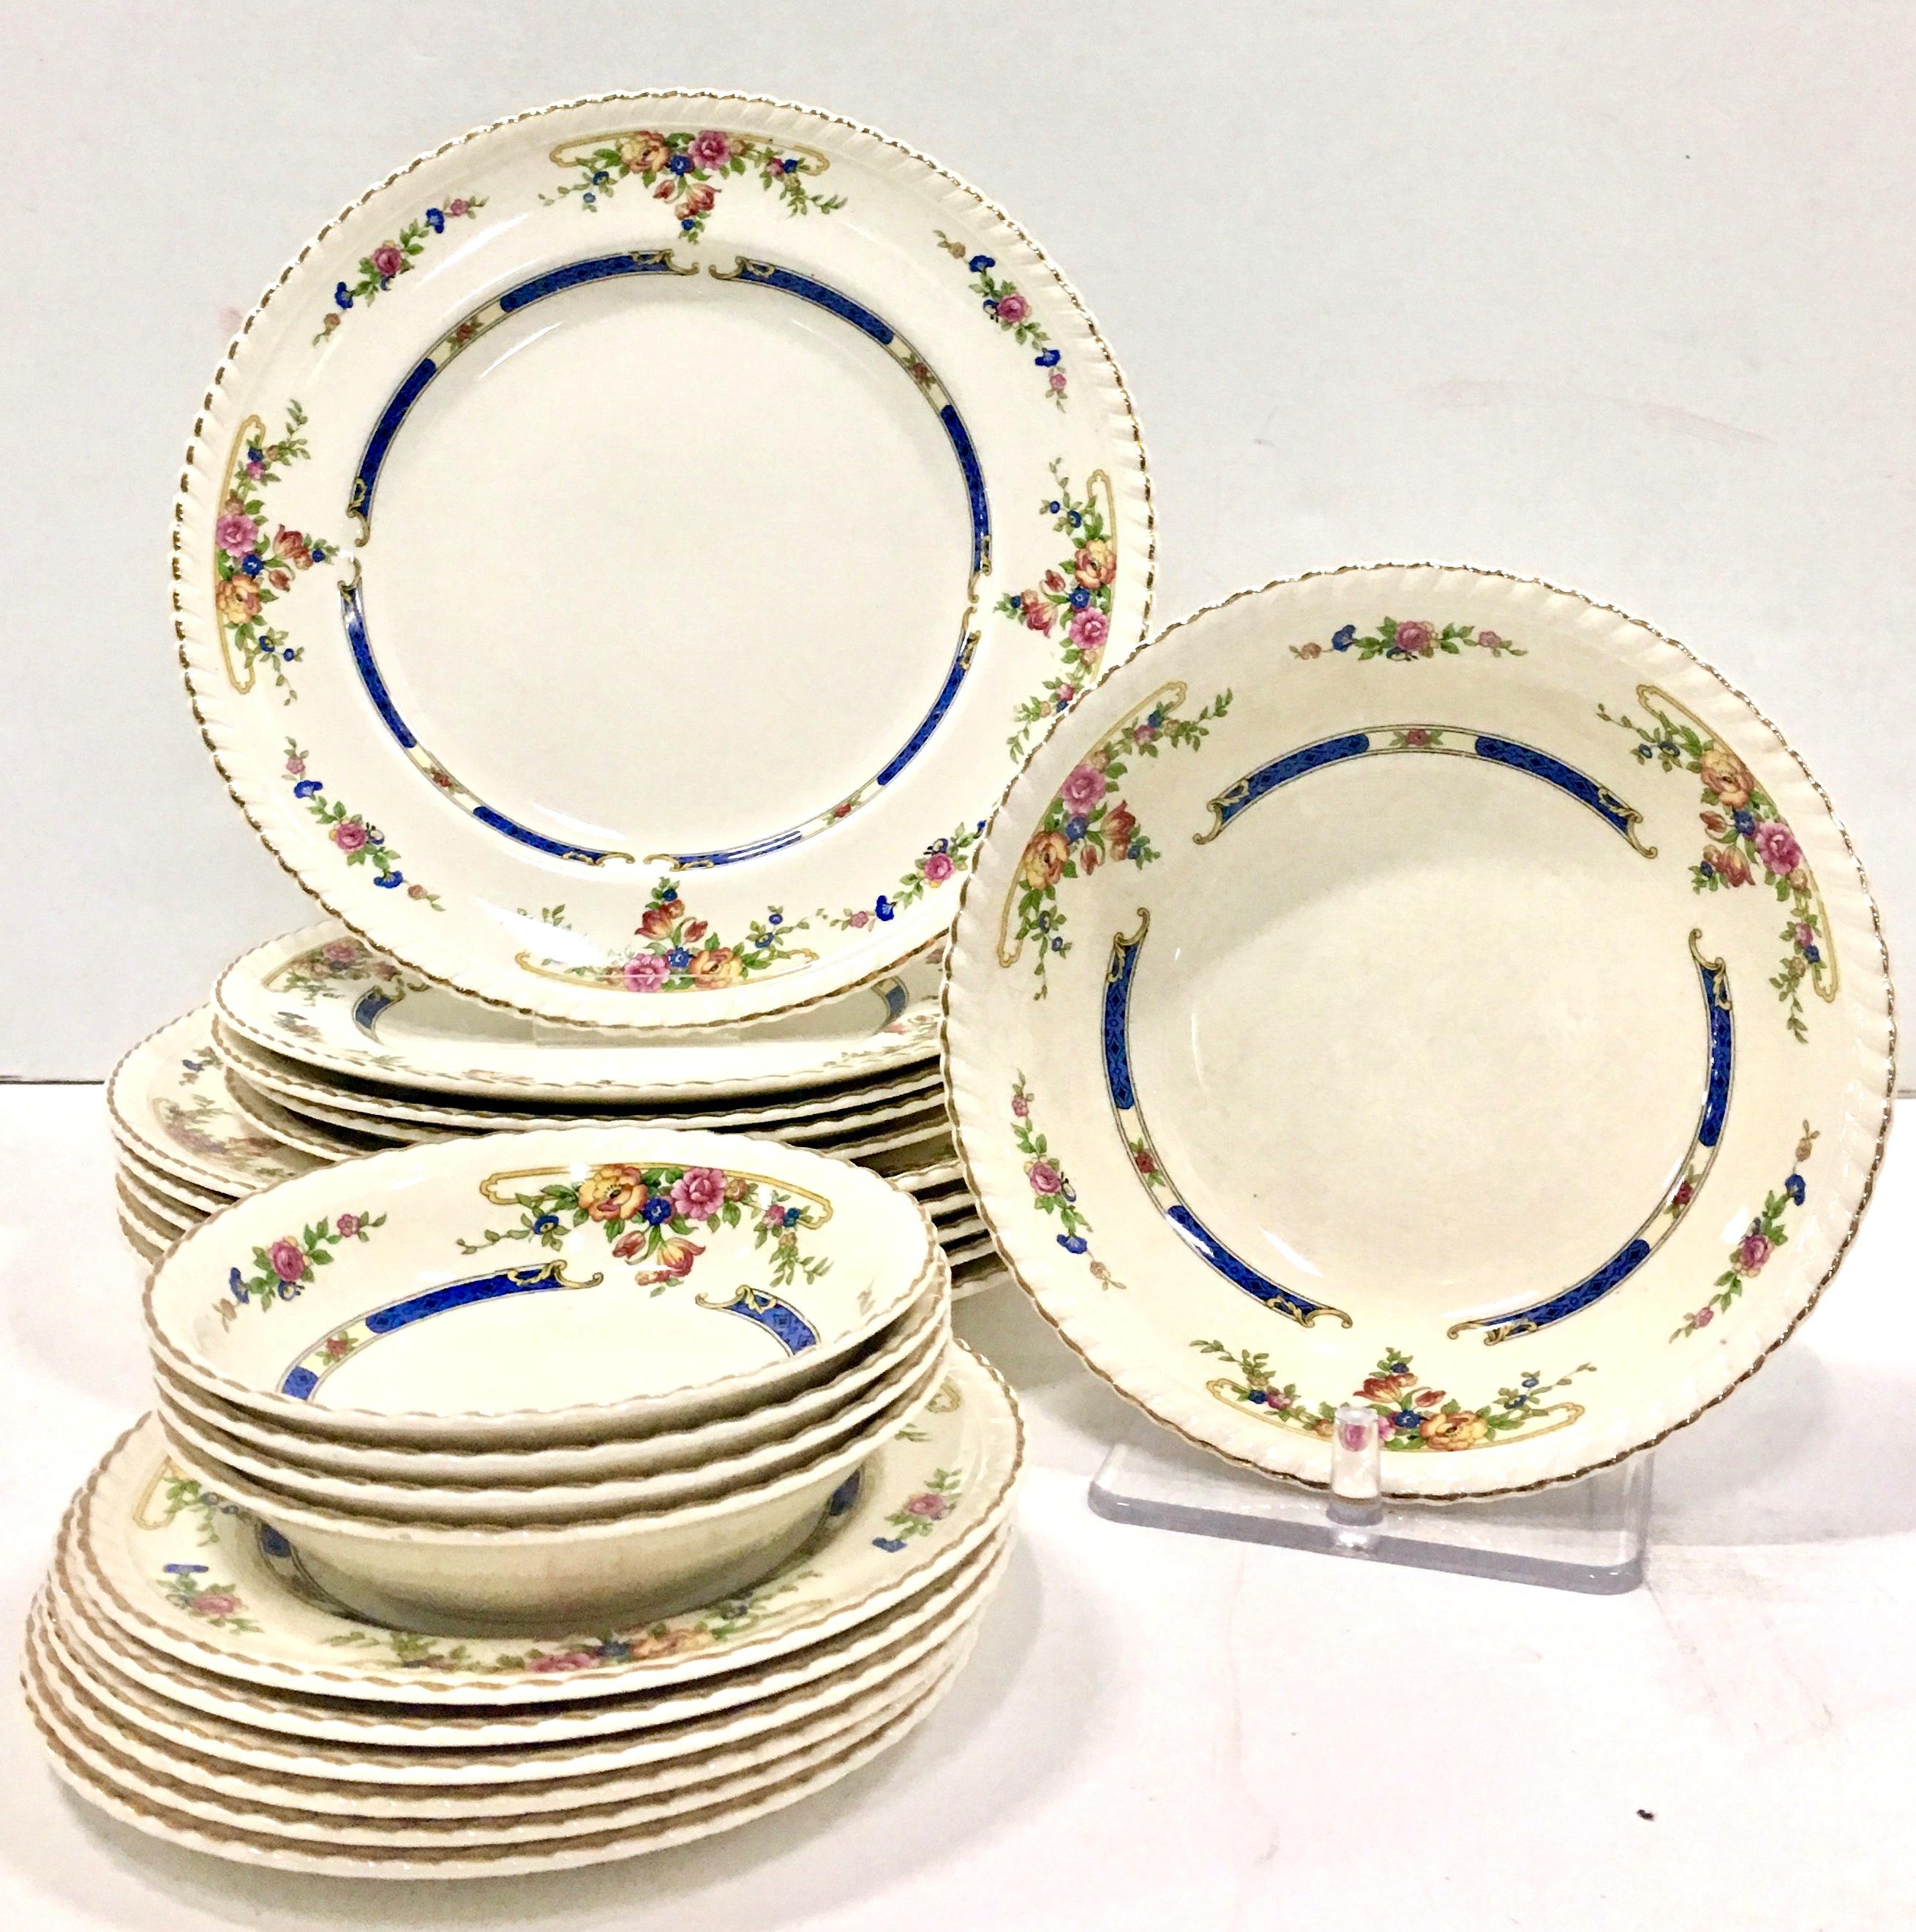 Antique English Art Nouveau floral motif porcelain dinnerware set of 21 pieces in the 